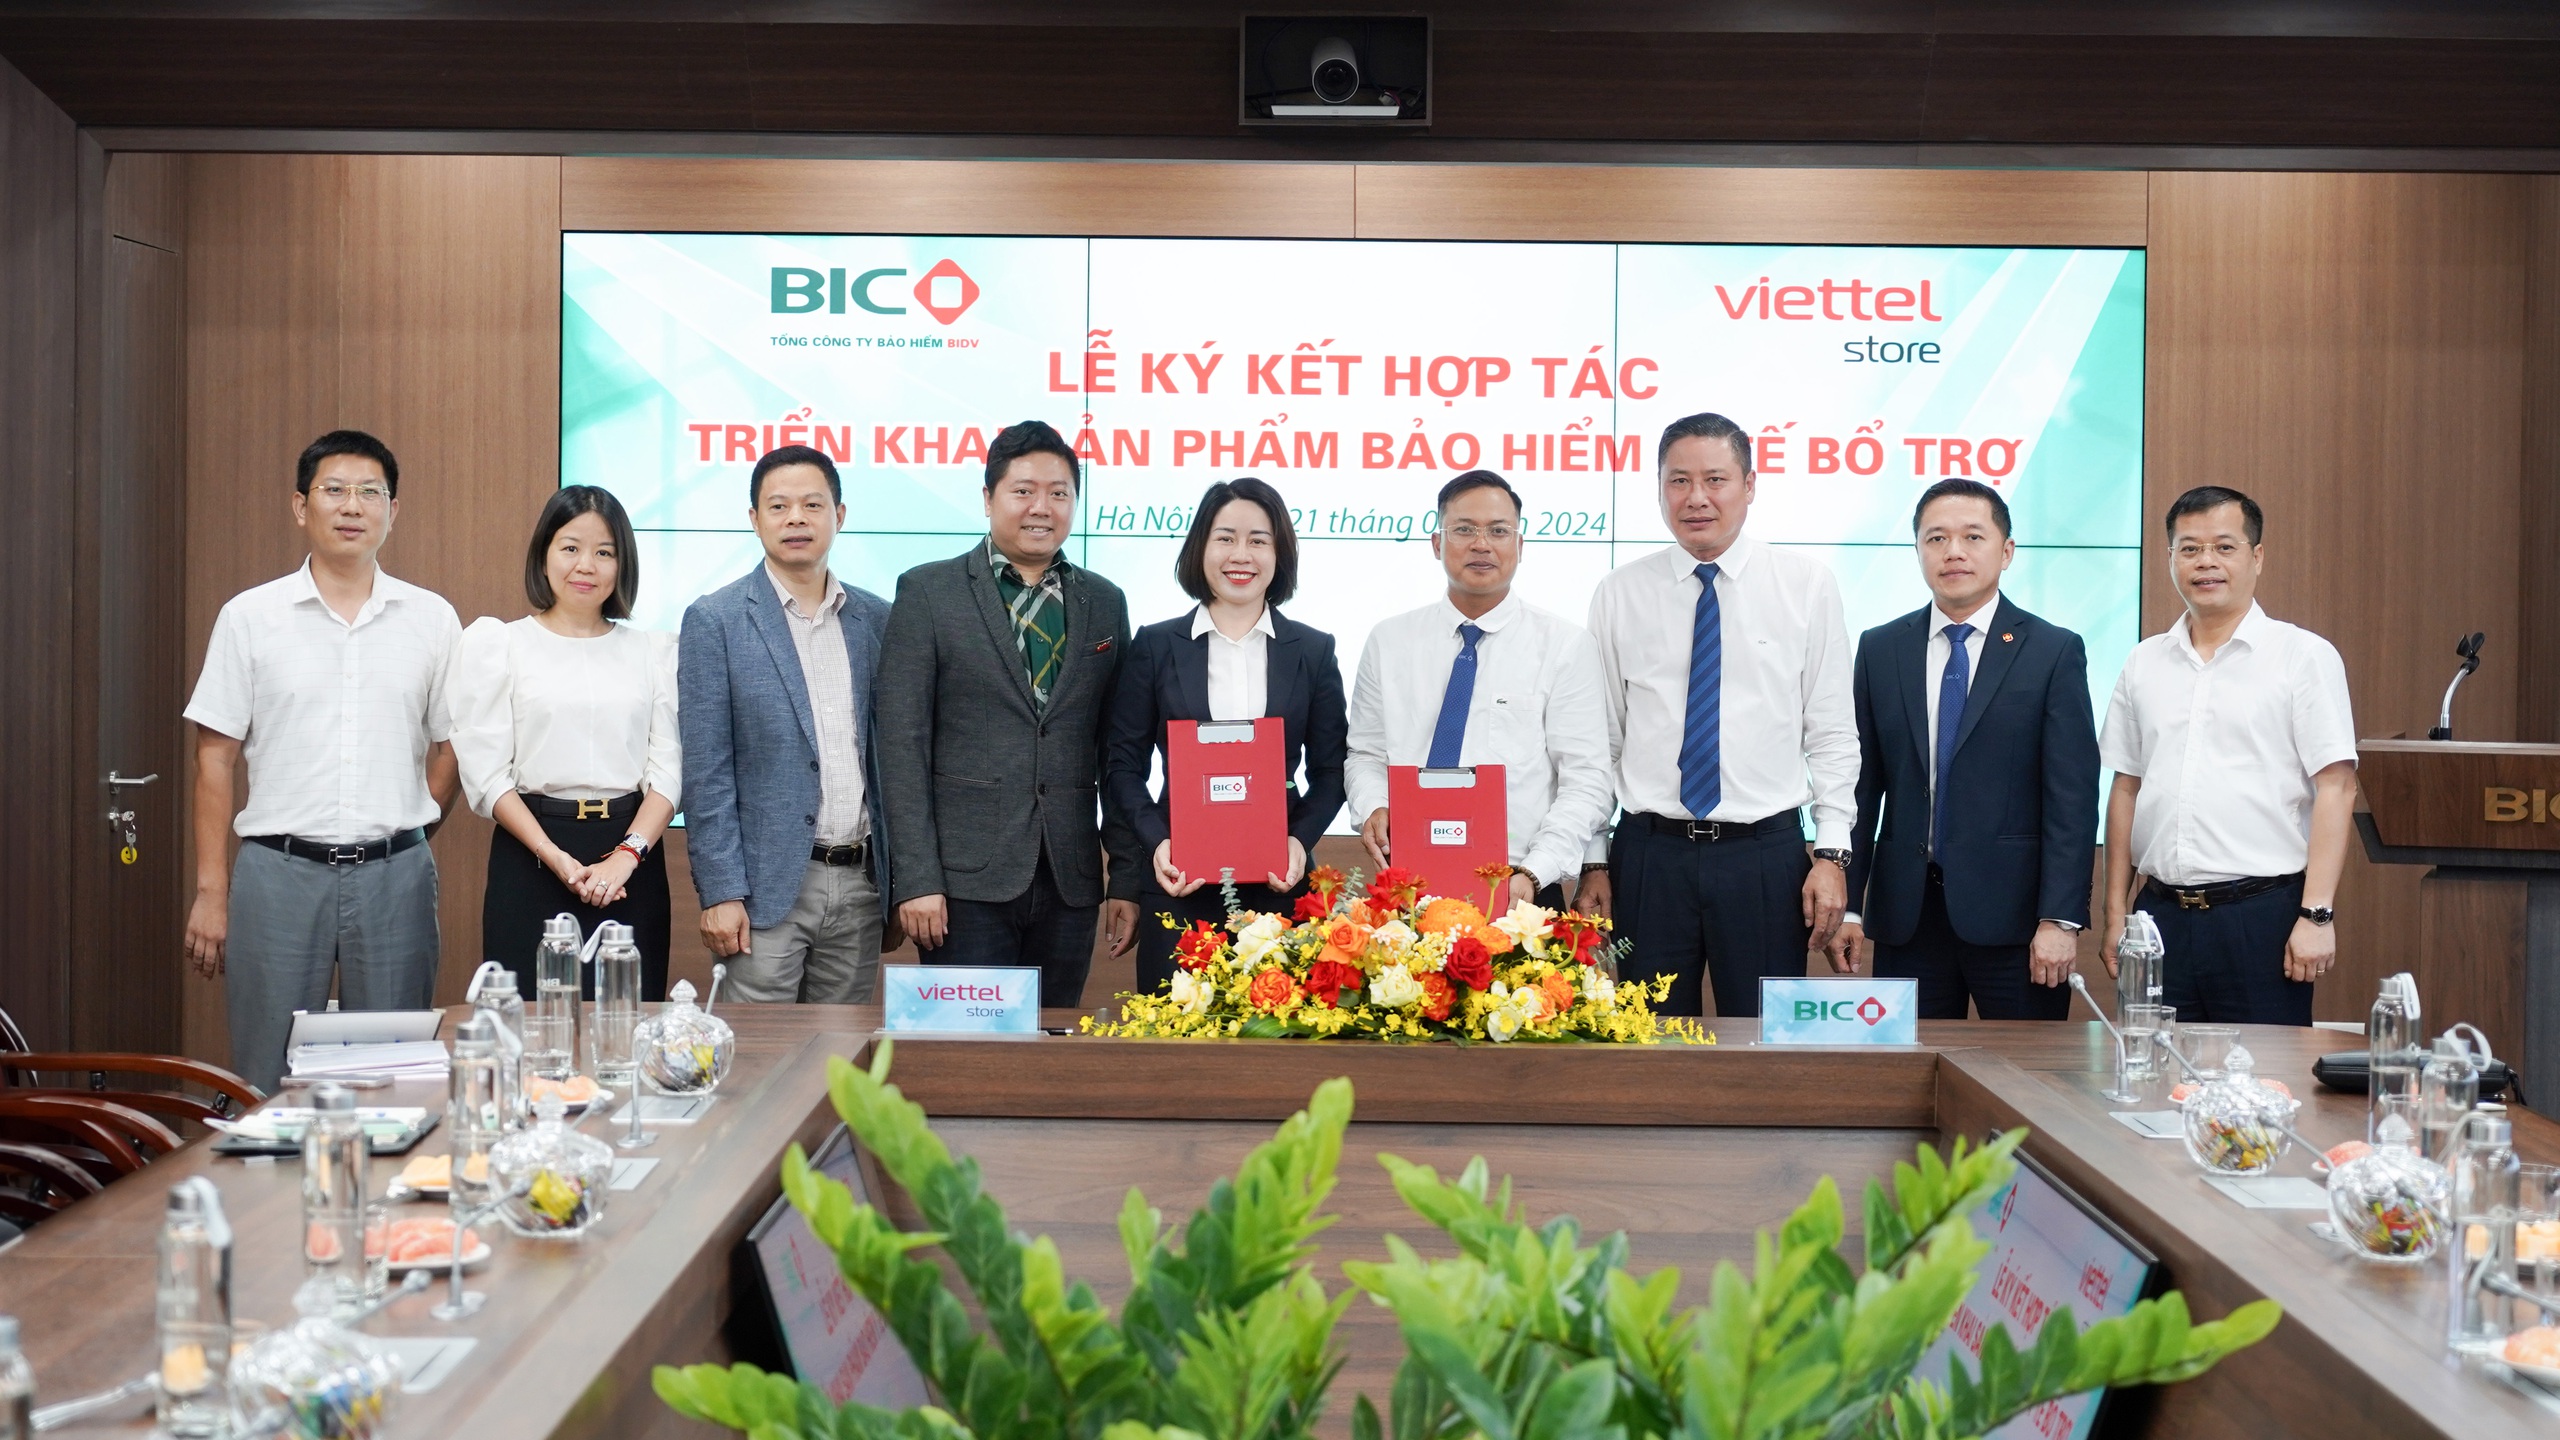 BIC và Viettel Store hợp tác ra mắt sản phẩm bảo hiểm y tế bổ trợ- Ảnh 1.